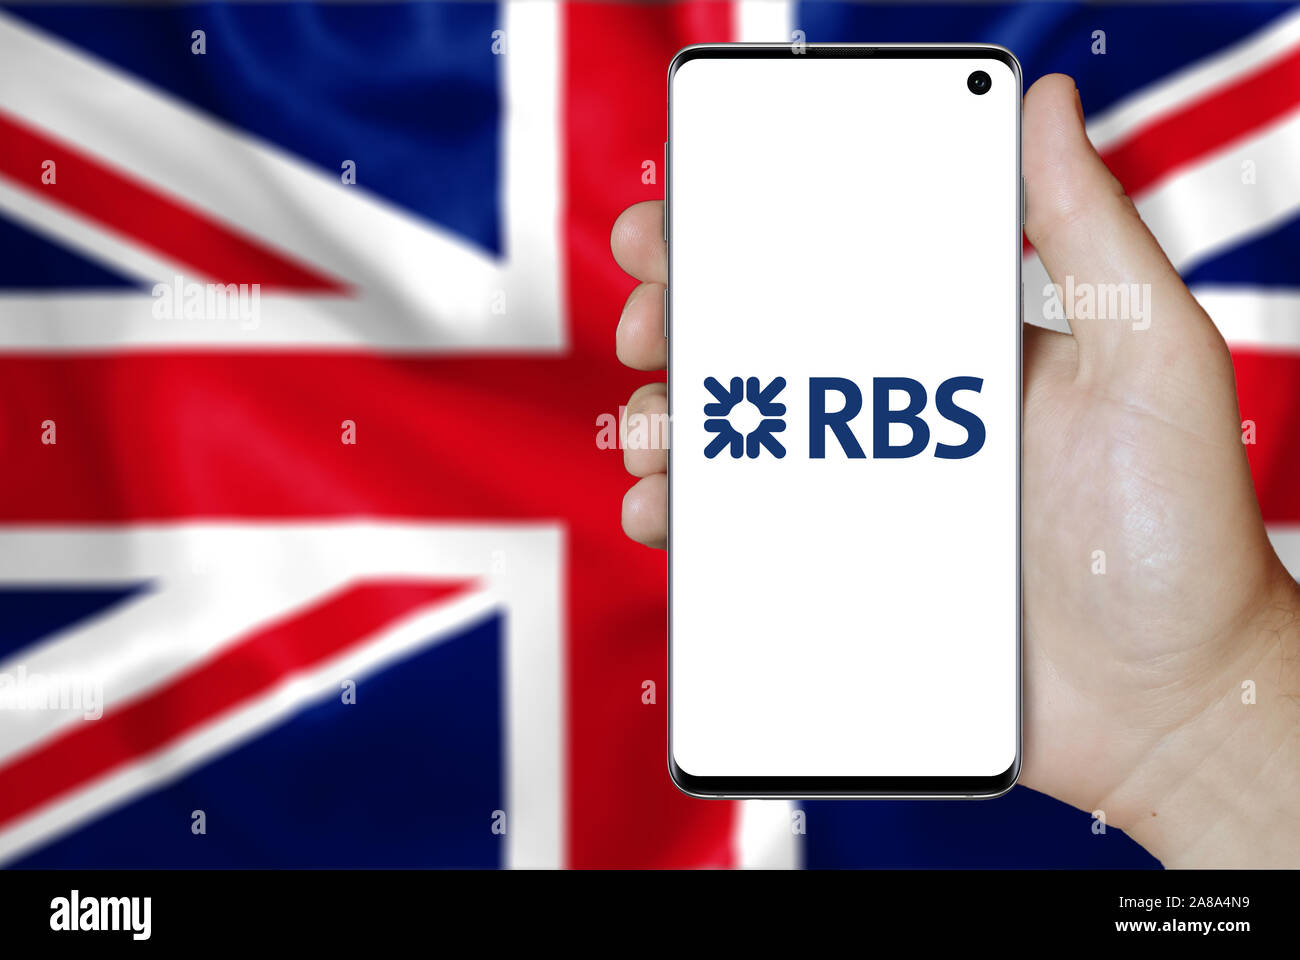 Logo de compagnie publique Royal Bank of Scotland Group affiche sur un smartphone. Pavillon de l'UK l'arrière-plan. Credit : PIXDUCE Banque D'Images